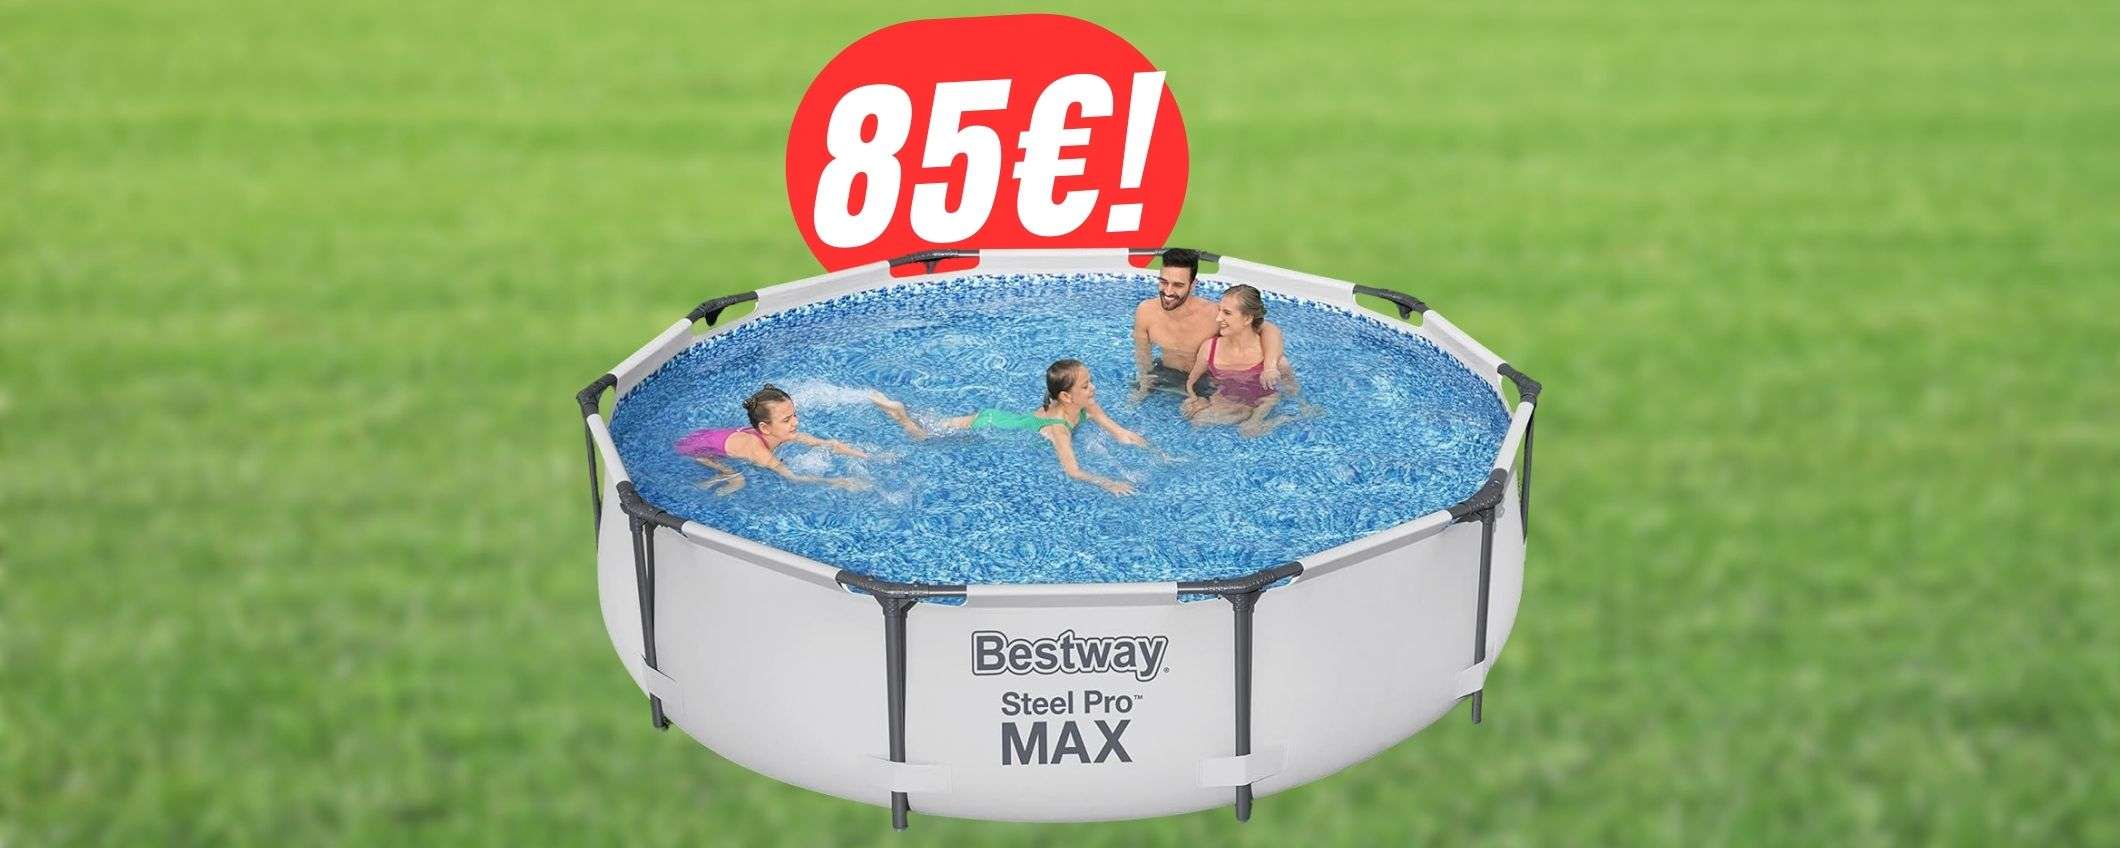 La MAXI-PISCINA tonda di Bestway è in offerta a soli 85€!